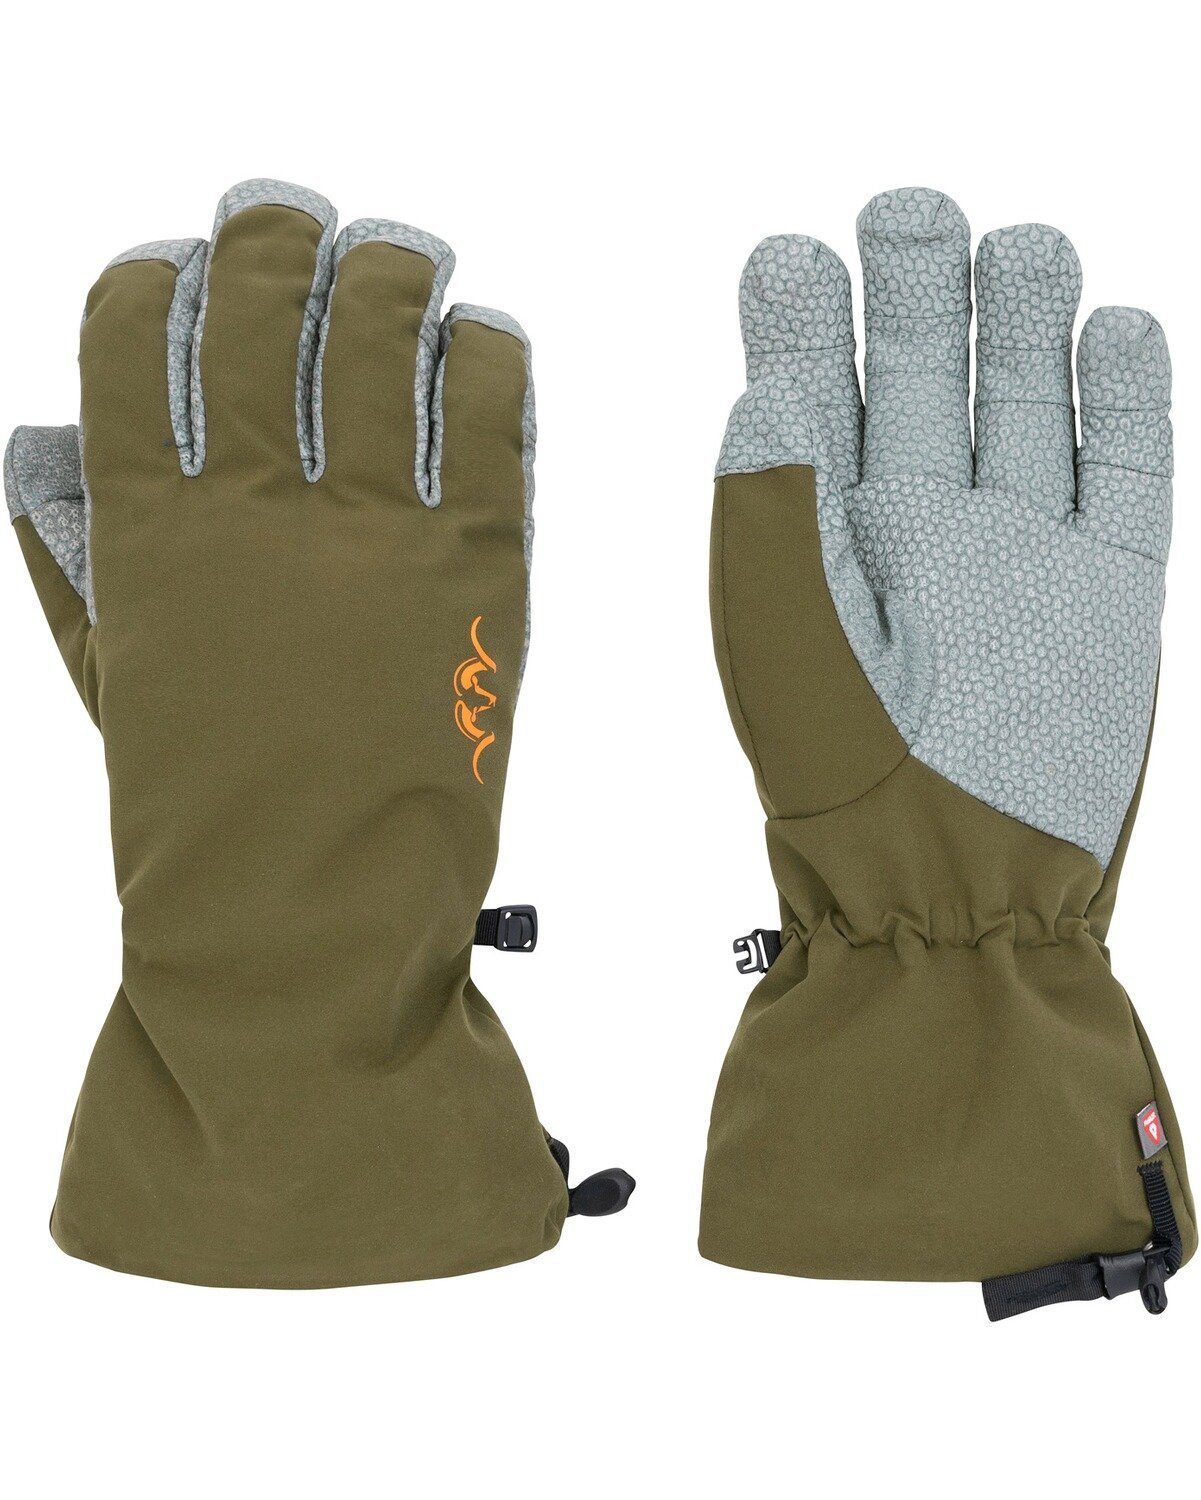 Blaser Fleecehandschuhe 21 HunTec Dunkeloliv Winter-Handschuhe